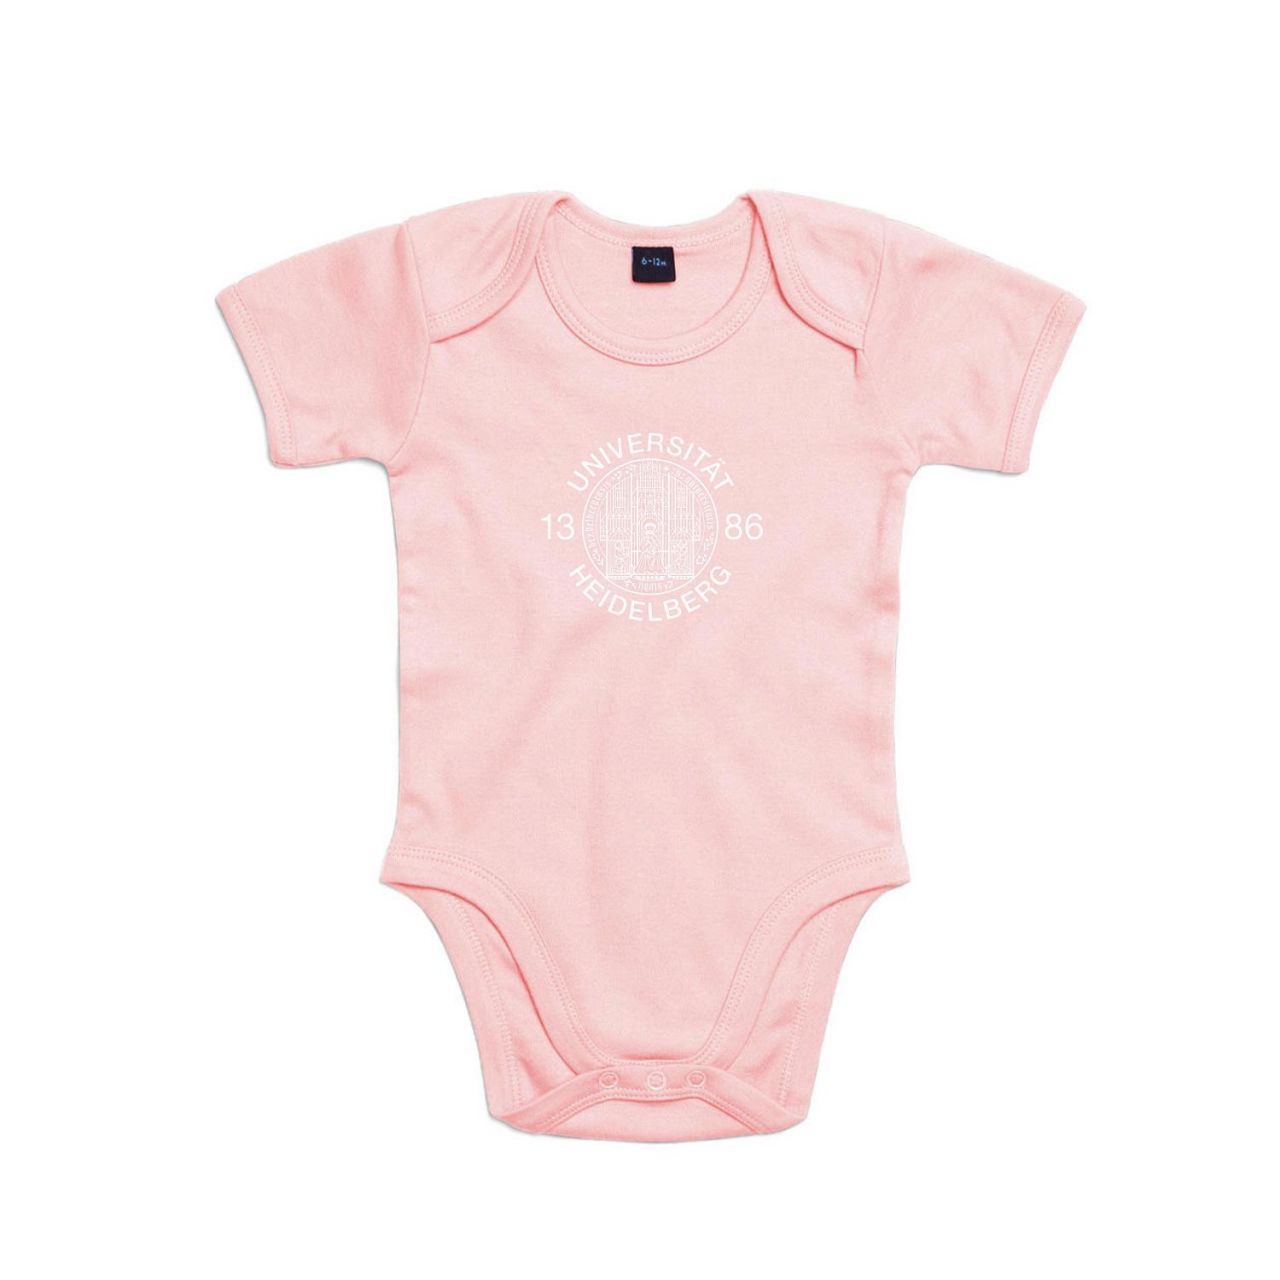 Baby Bodysuit, powder pink, siegel